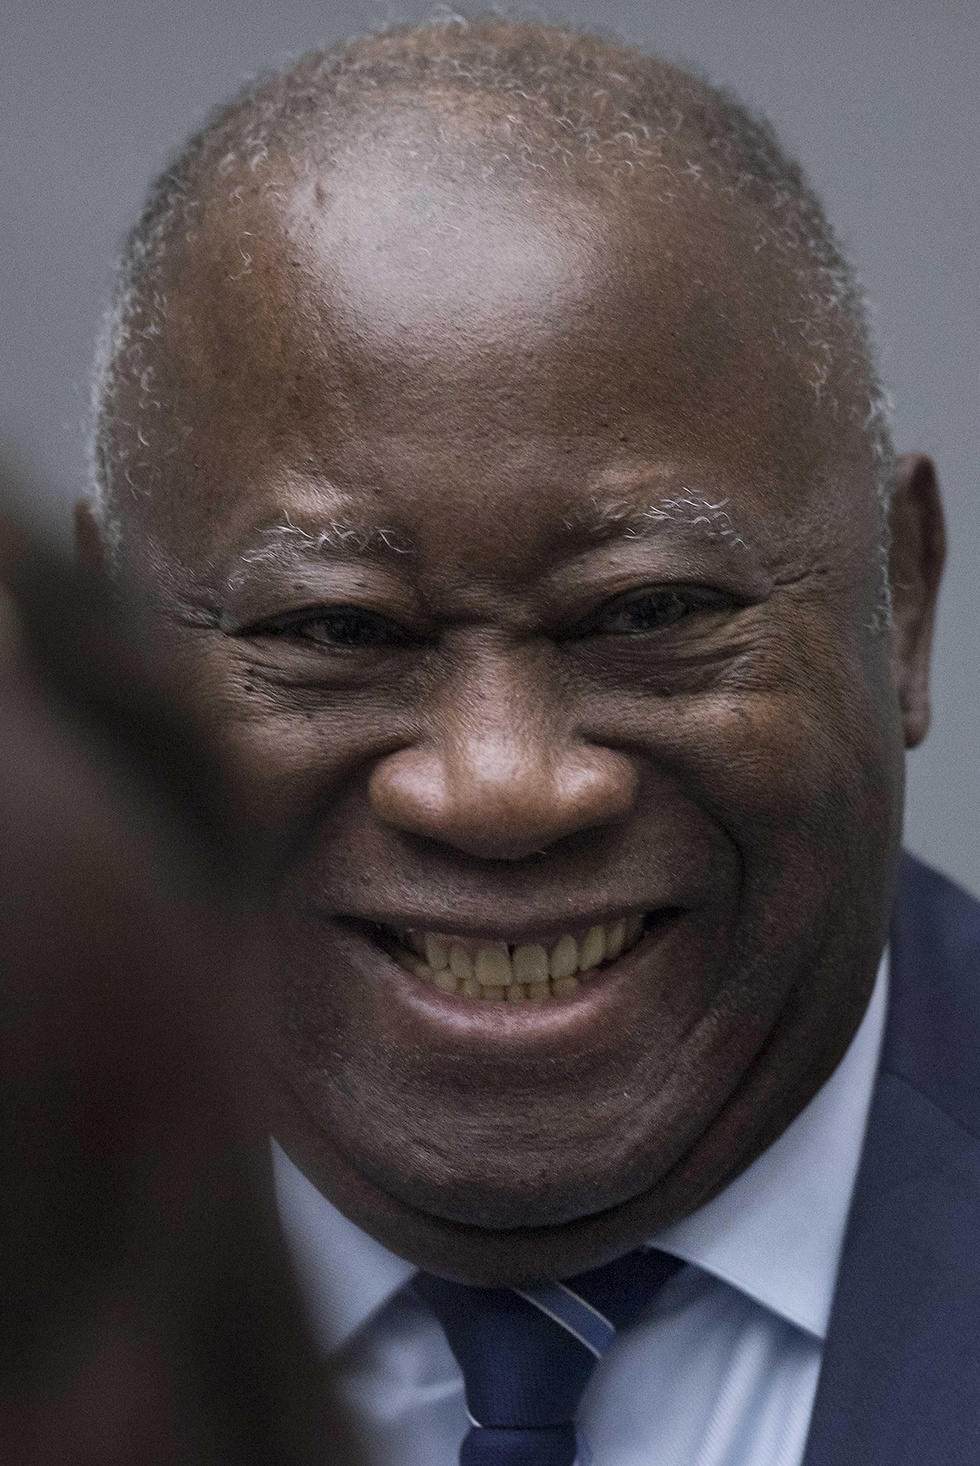 בית המשפט הבינלאומי ב האג זיכה את נשיא חוף השנהב לשעבר לורן גבאגבו מפשעי מלחמה (צילום: EPA)